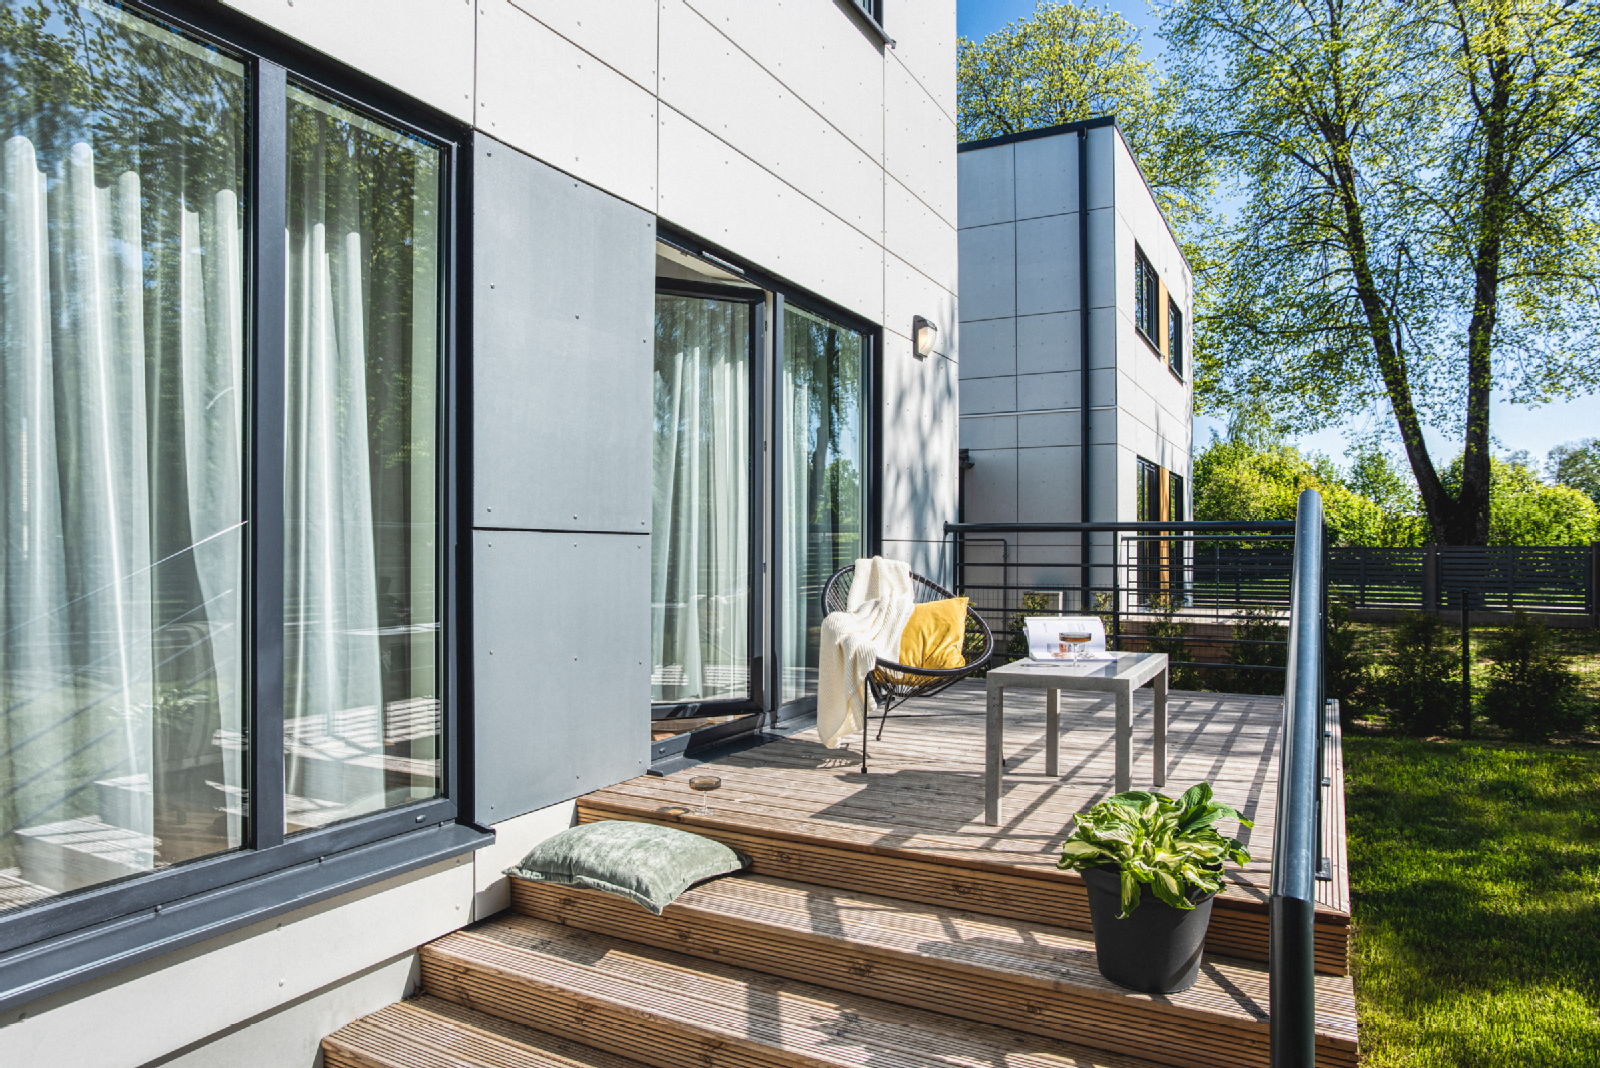 Šobrīd pārdošanā! Vasaras must have: mājoklis ar terasi - Nekustamo īpašumu ziņas - City24.lv nekustamo īpašumu sludinājumu portāls